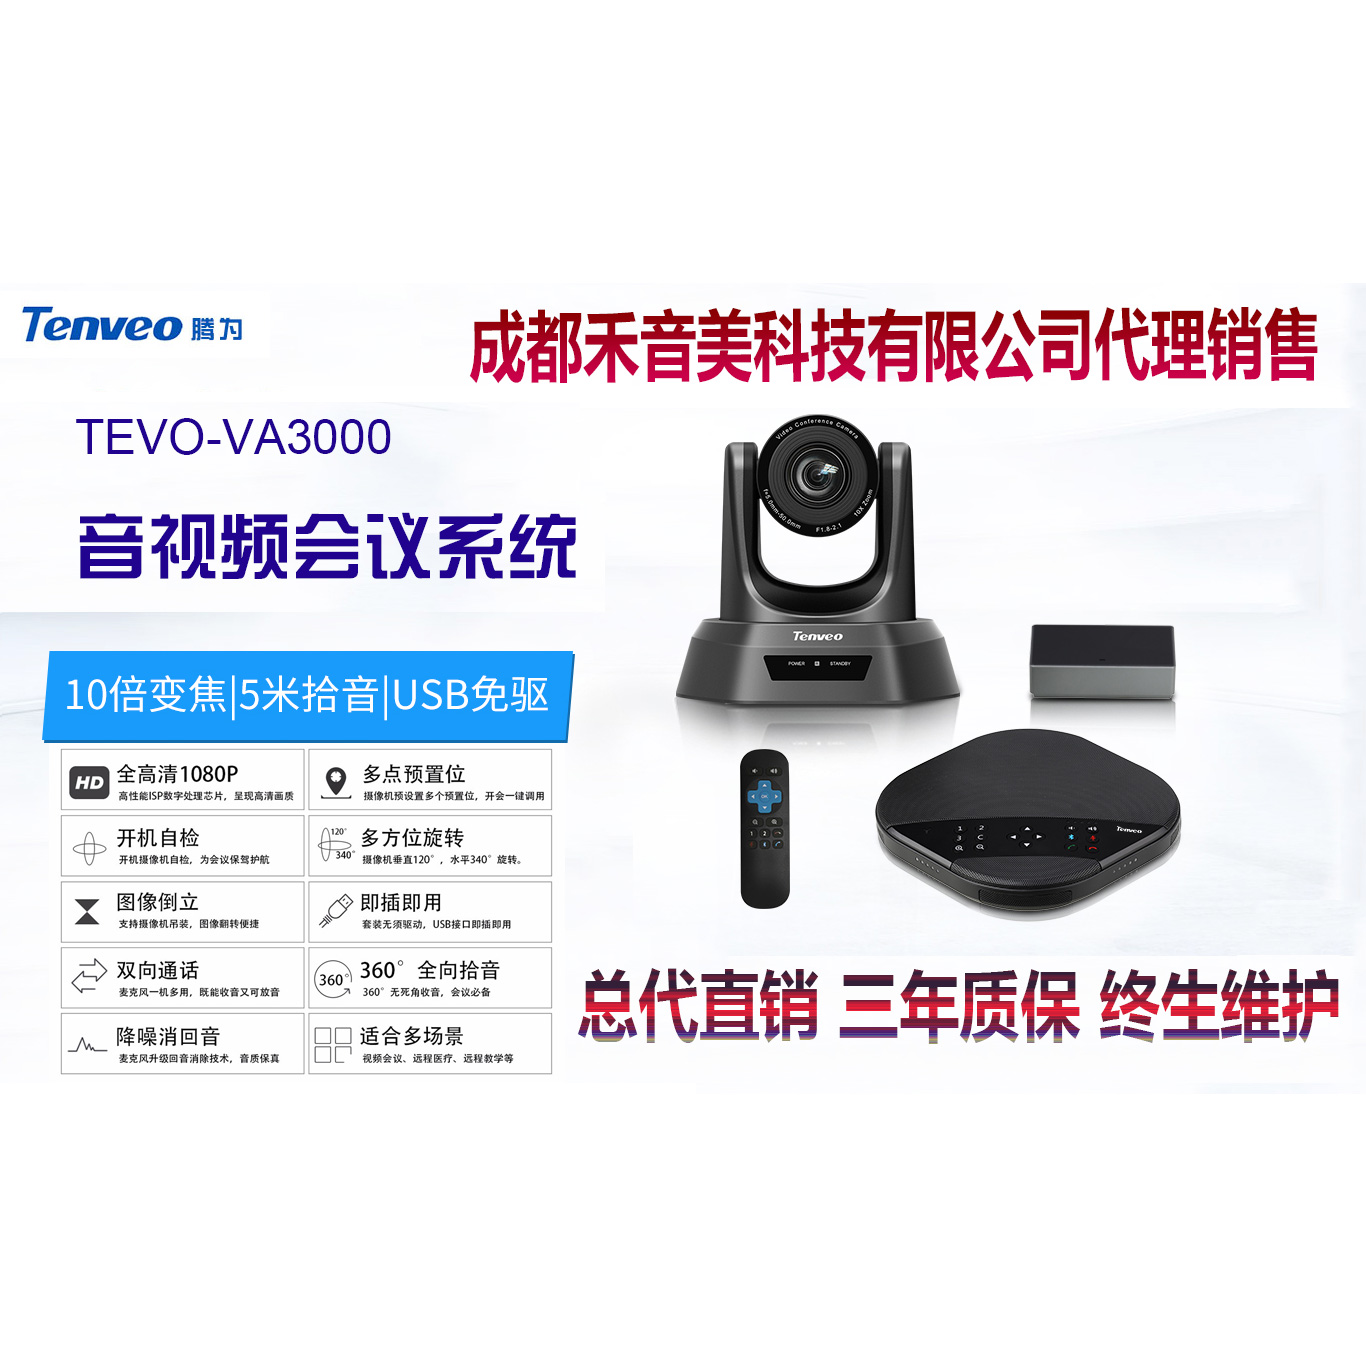 成都 腾为 Tenveo TEVO-A3000 网络视频会议全向麦克风 视频会议摄像机代理销售安装调试维修